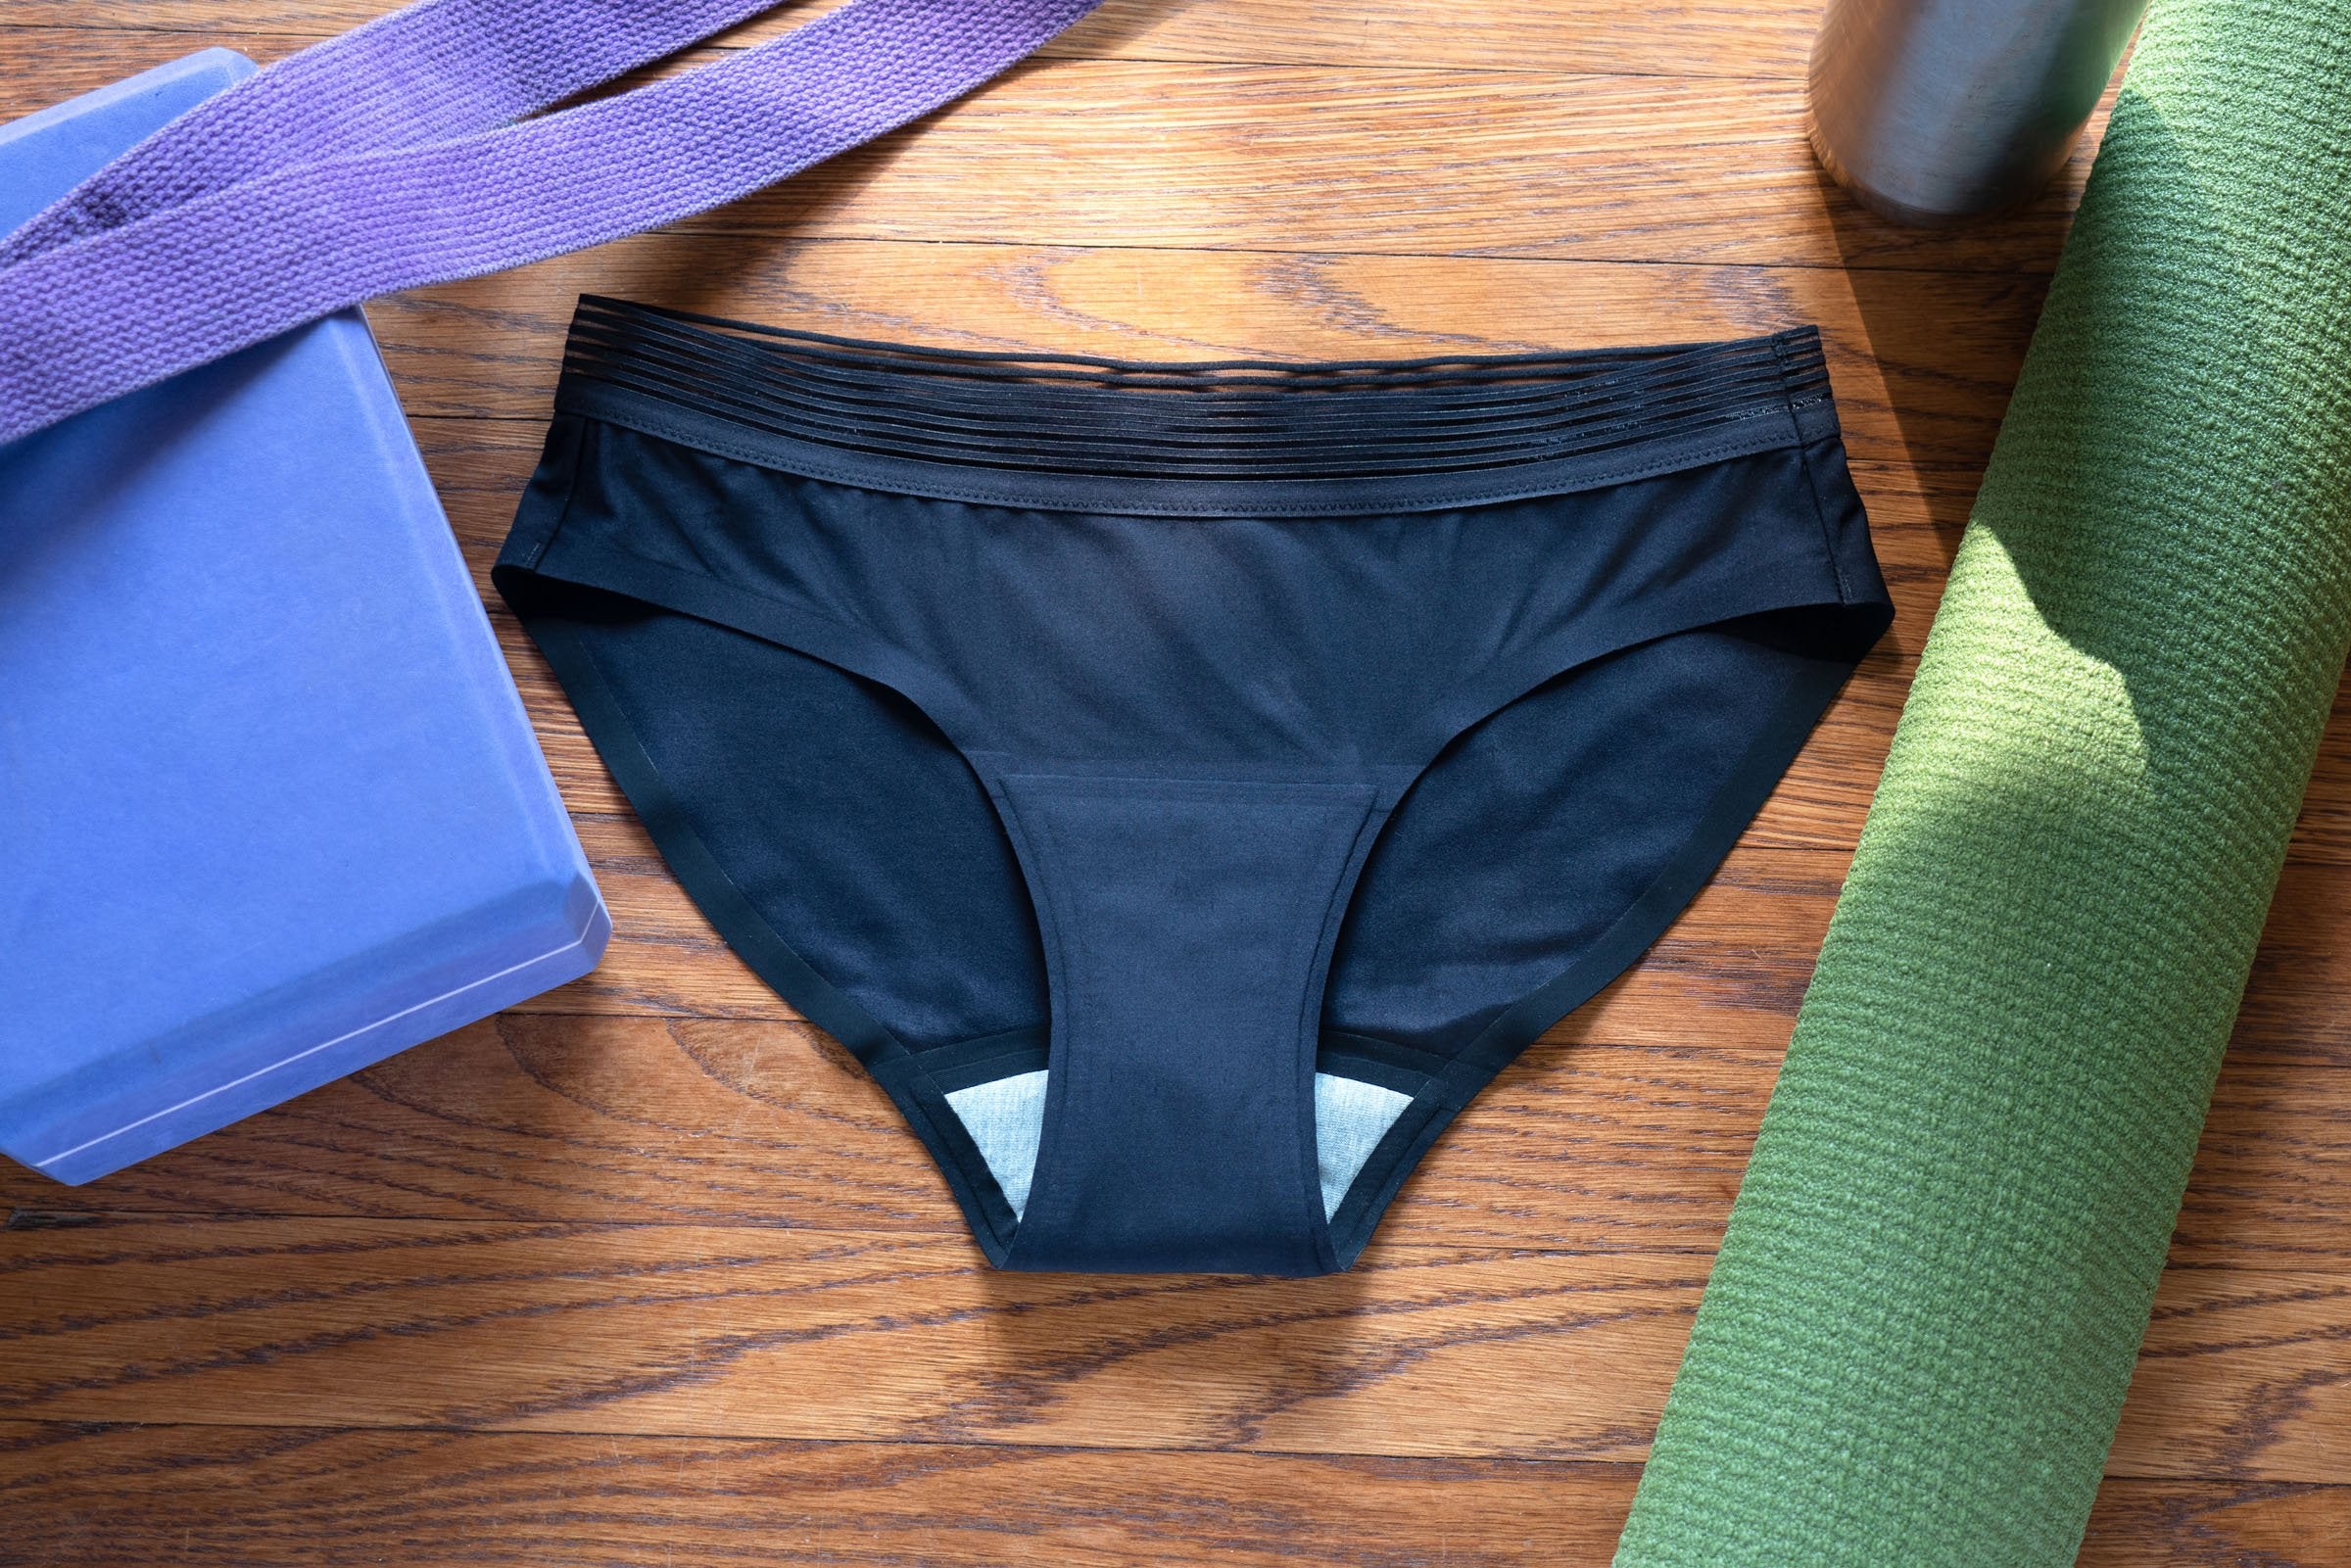 Best Discountleakproof Underwear For Women Incontinence,leak Proof